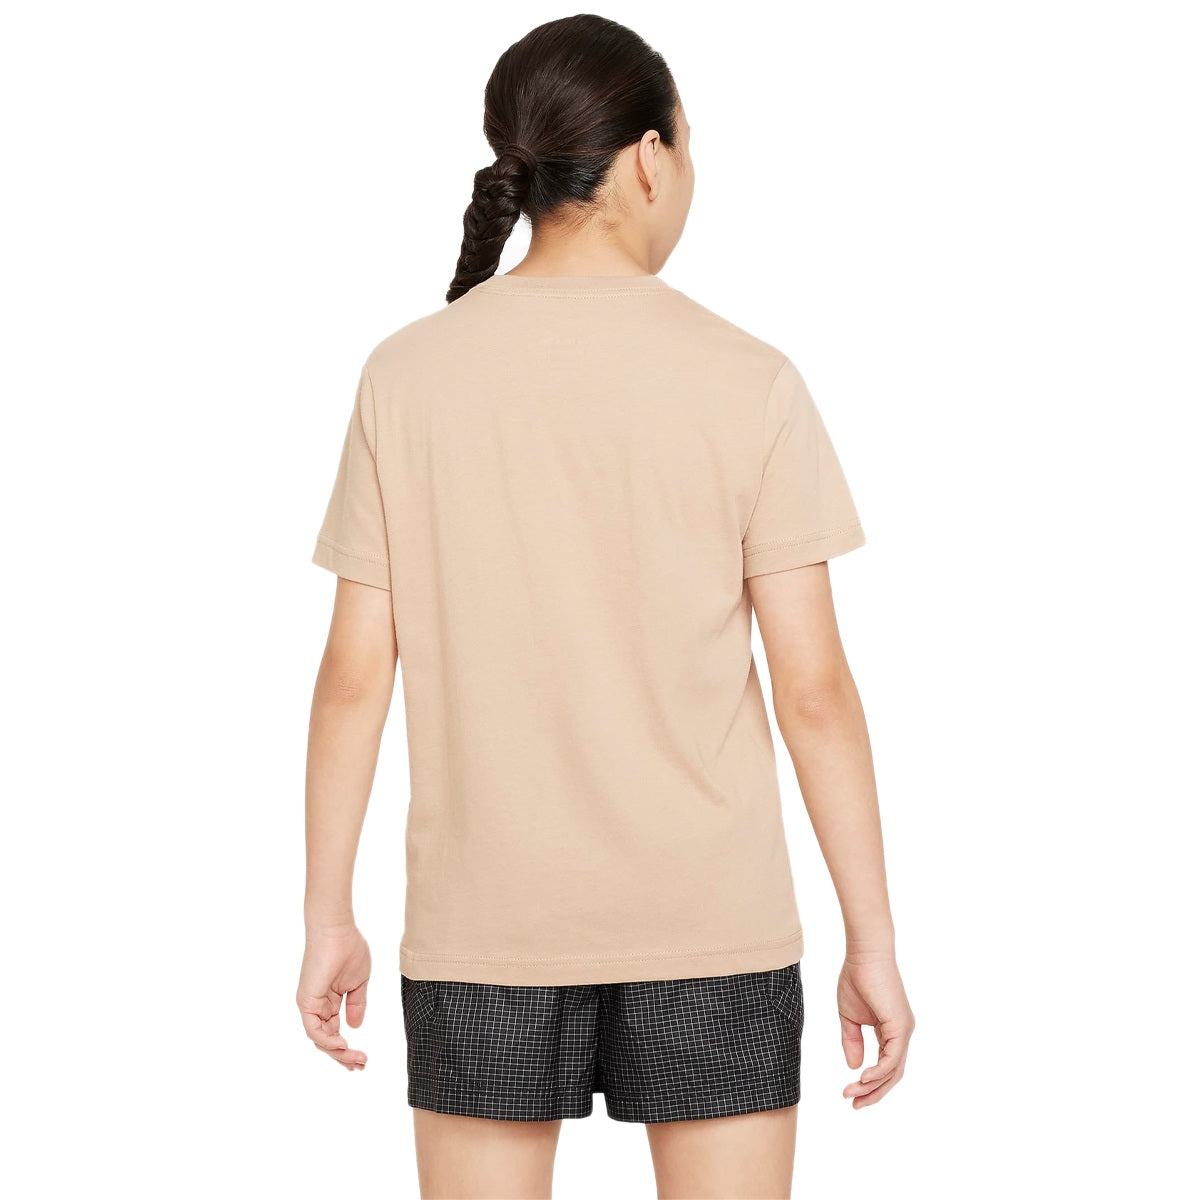 Nike Sportswear T-Shirt für Jugendliche FD0928-200 - beige